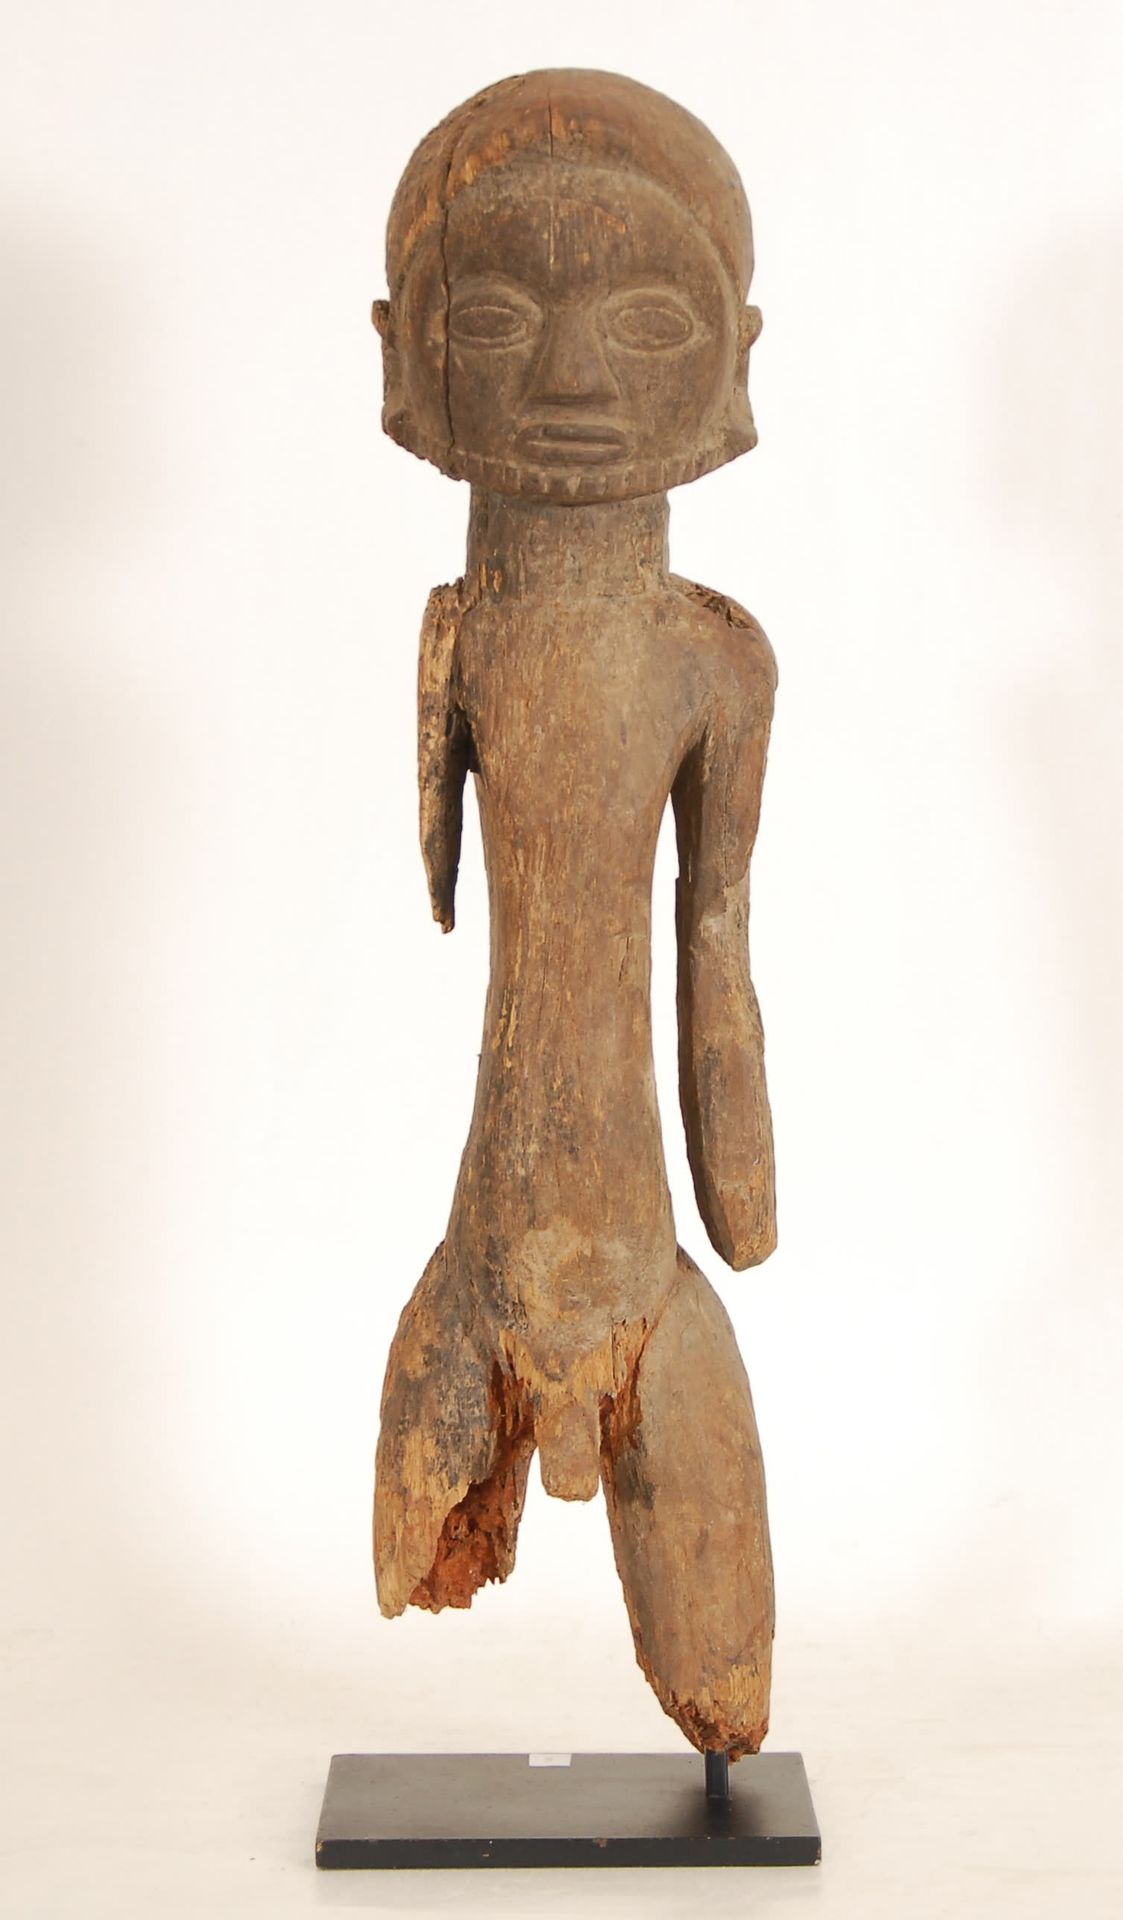 Afrique - Africa 卢巴族祖先像
木雕。刚果民主共和国。
，高62.5厘米。